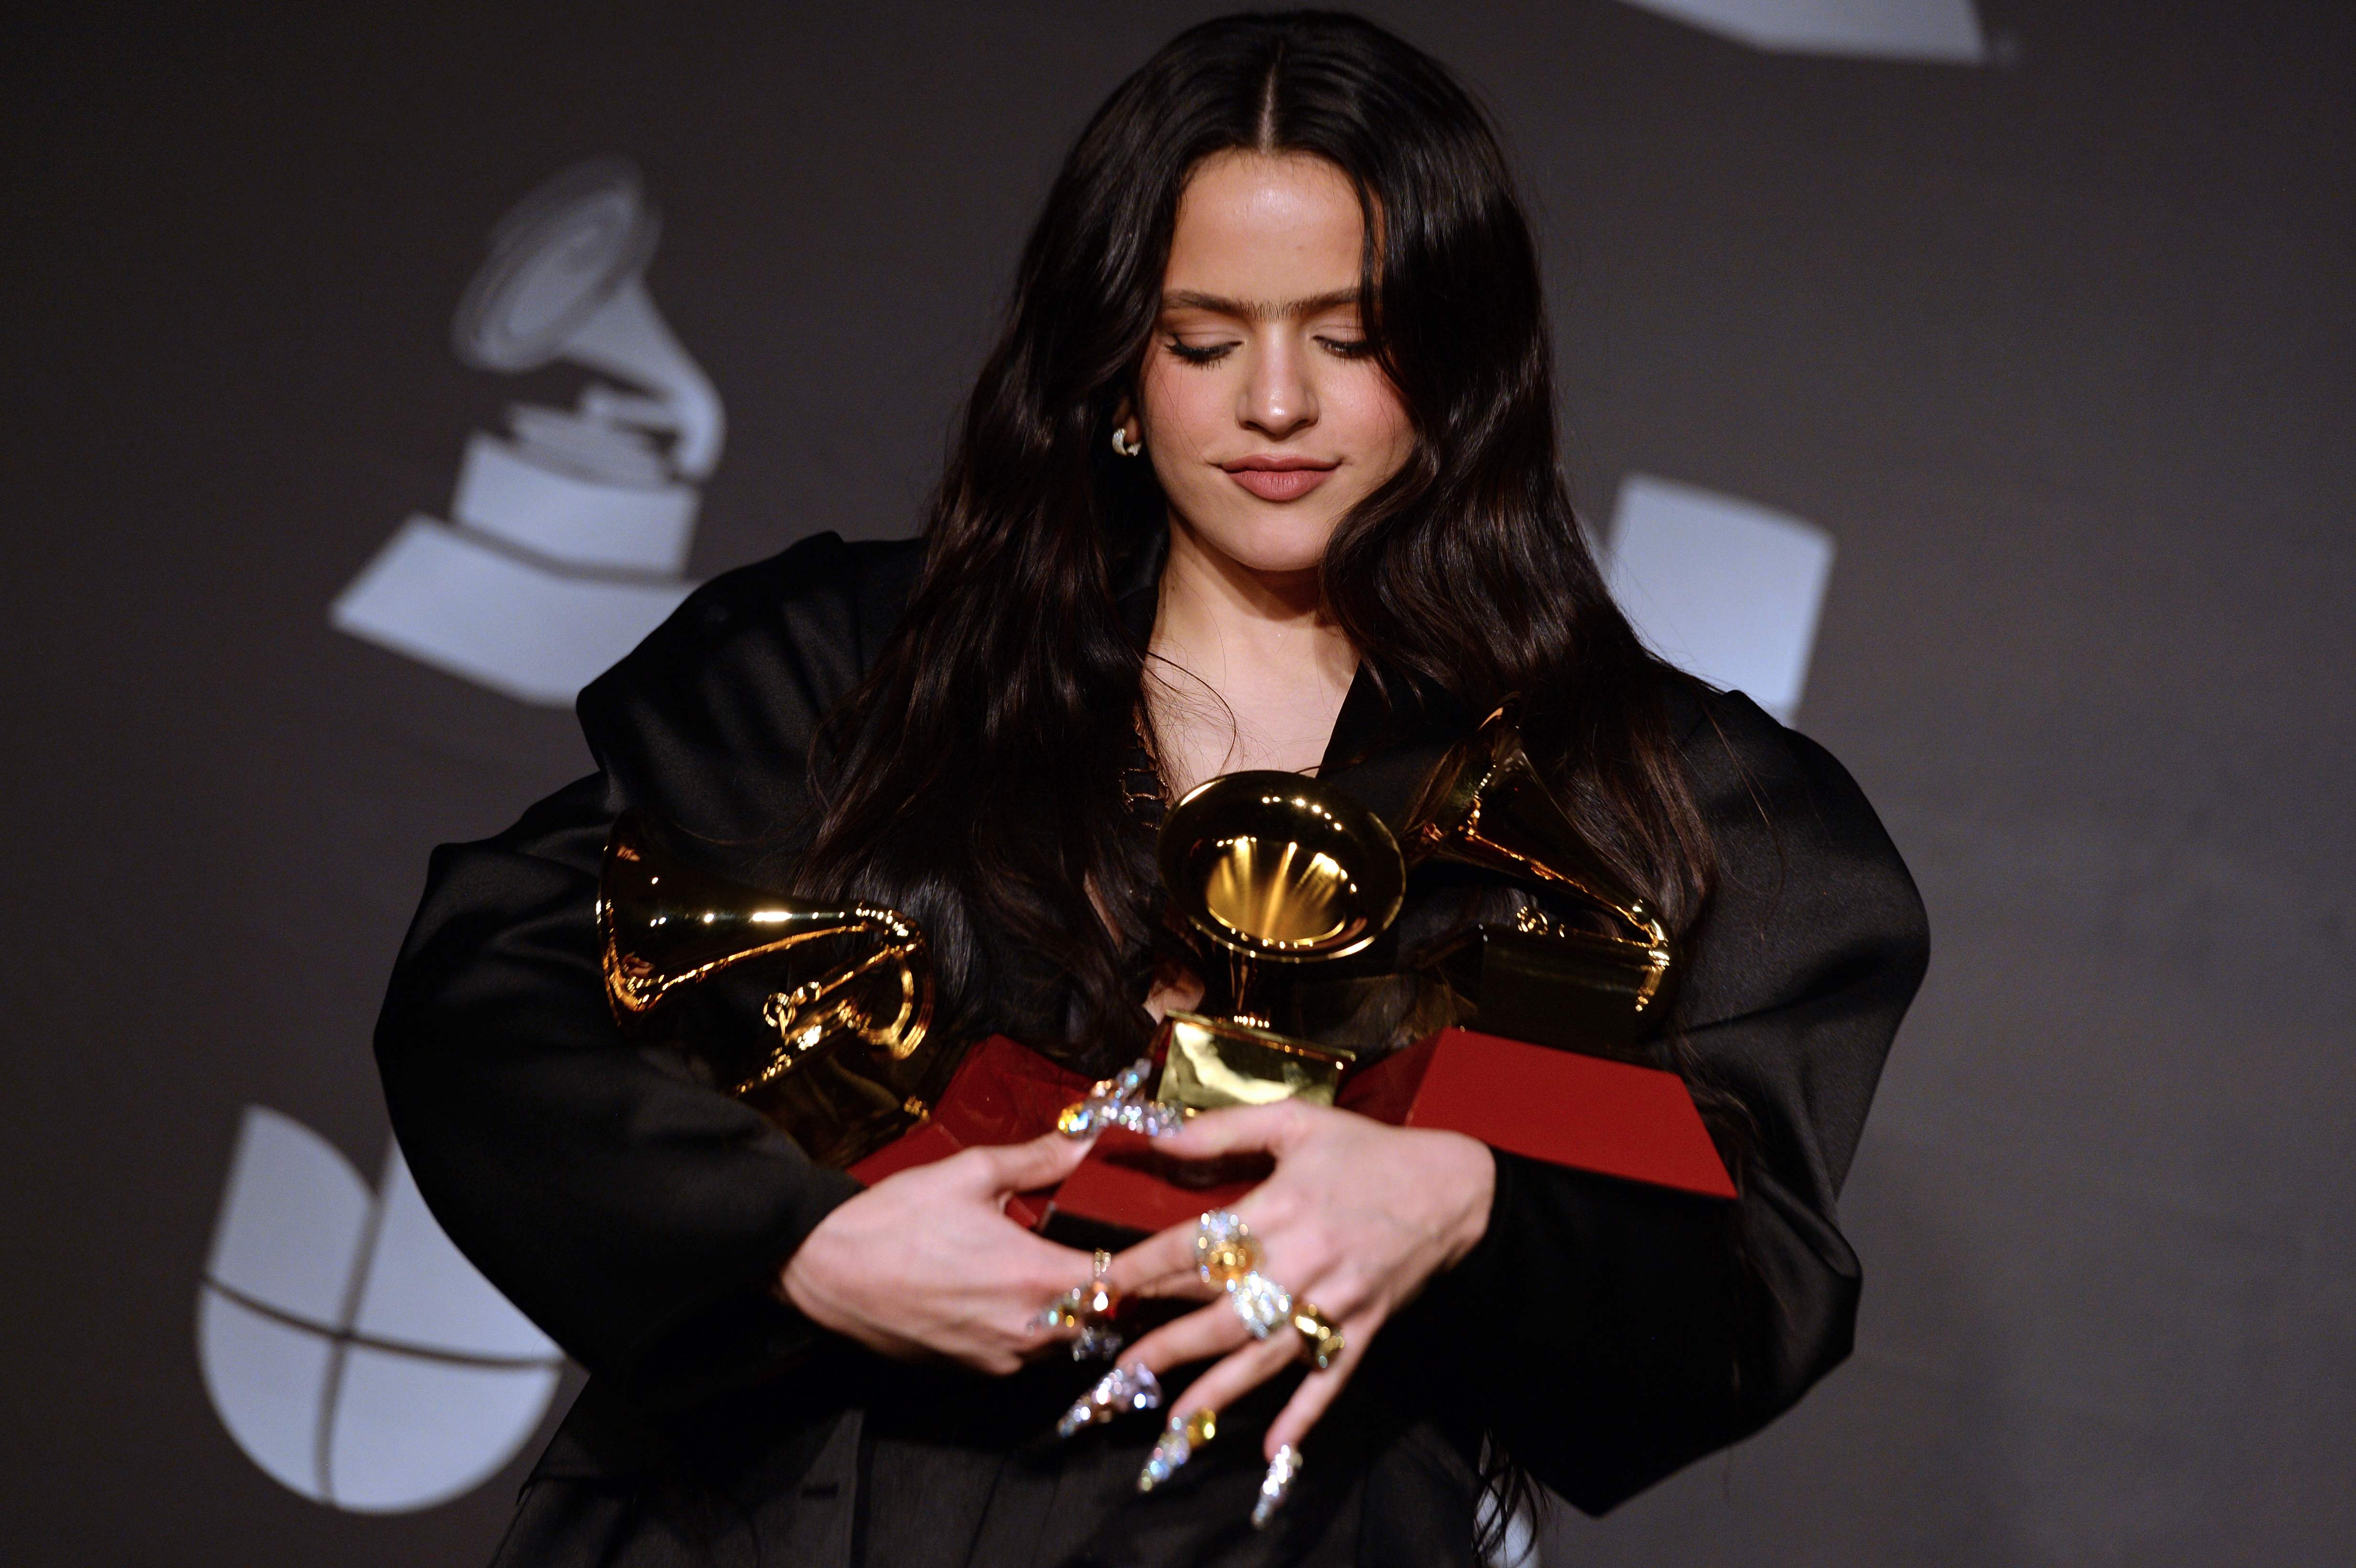 La cantante española Rosalía recibió 5 premios Latin Grammy. (Foto Prensa Libre: Bridget BENNETT / AFP).